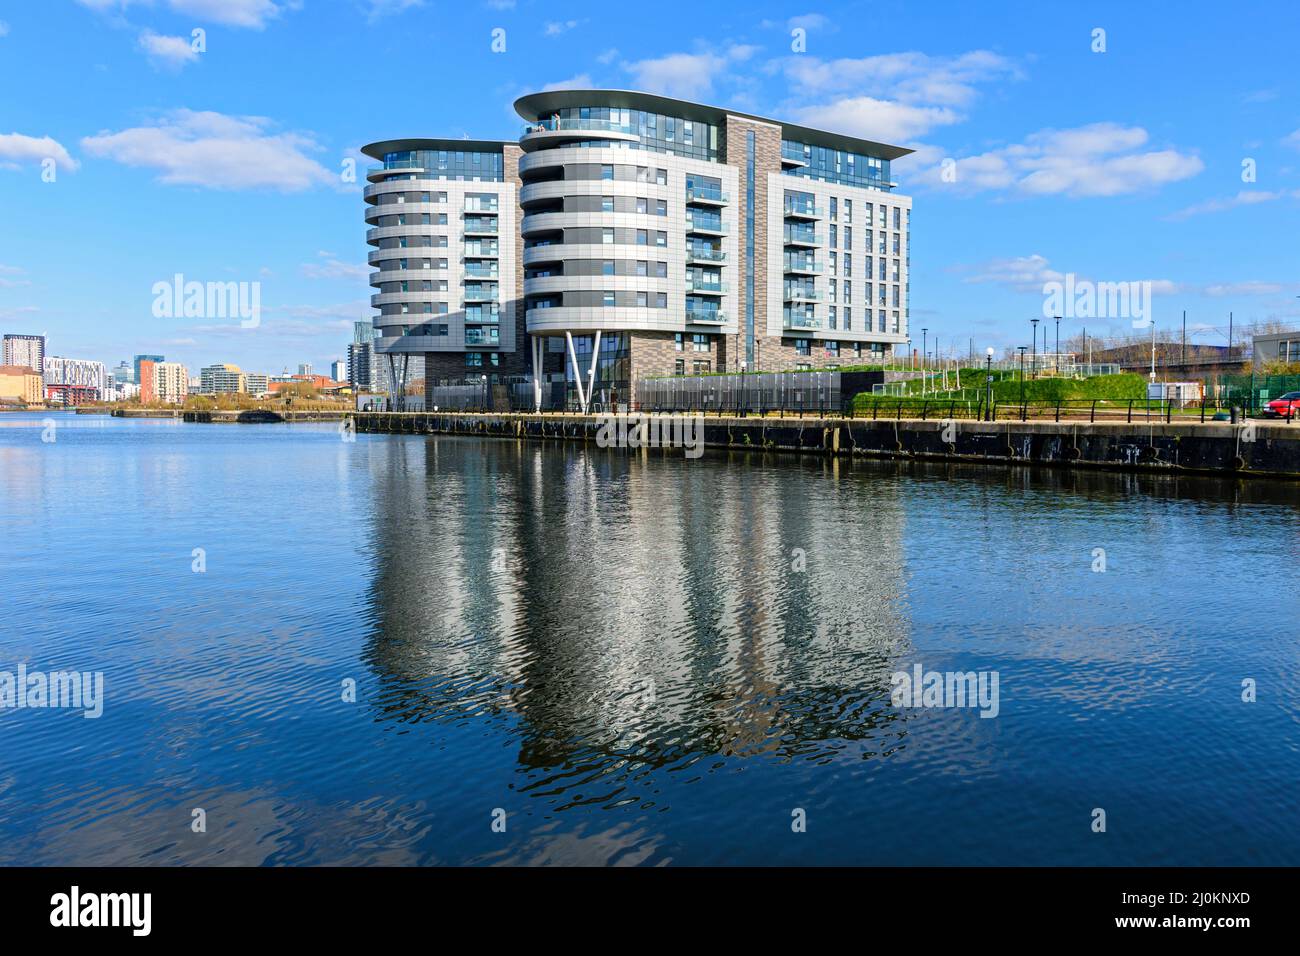 Deux des X1 blocs d'appartements de Manchester Waters, près du canal de Manchester Ship, Pomona Island, Manchester, Angleterre, Royaume-Uni Banque D'Images